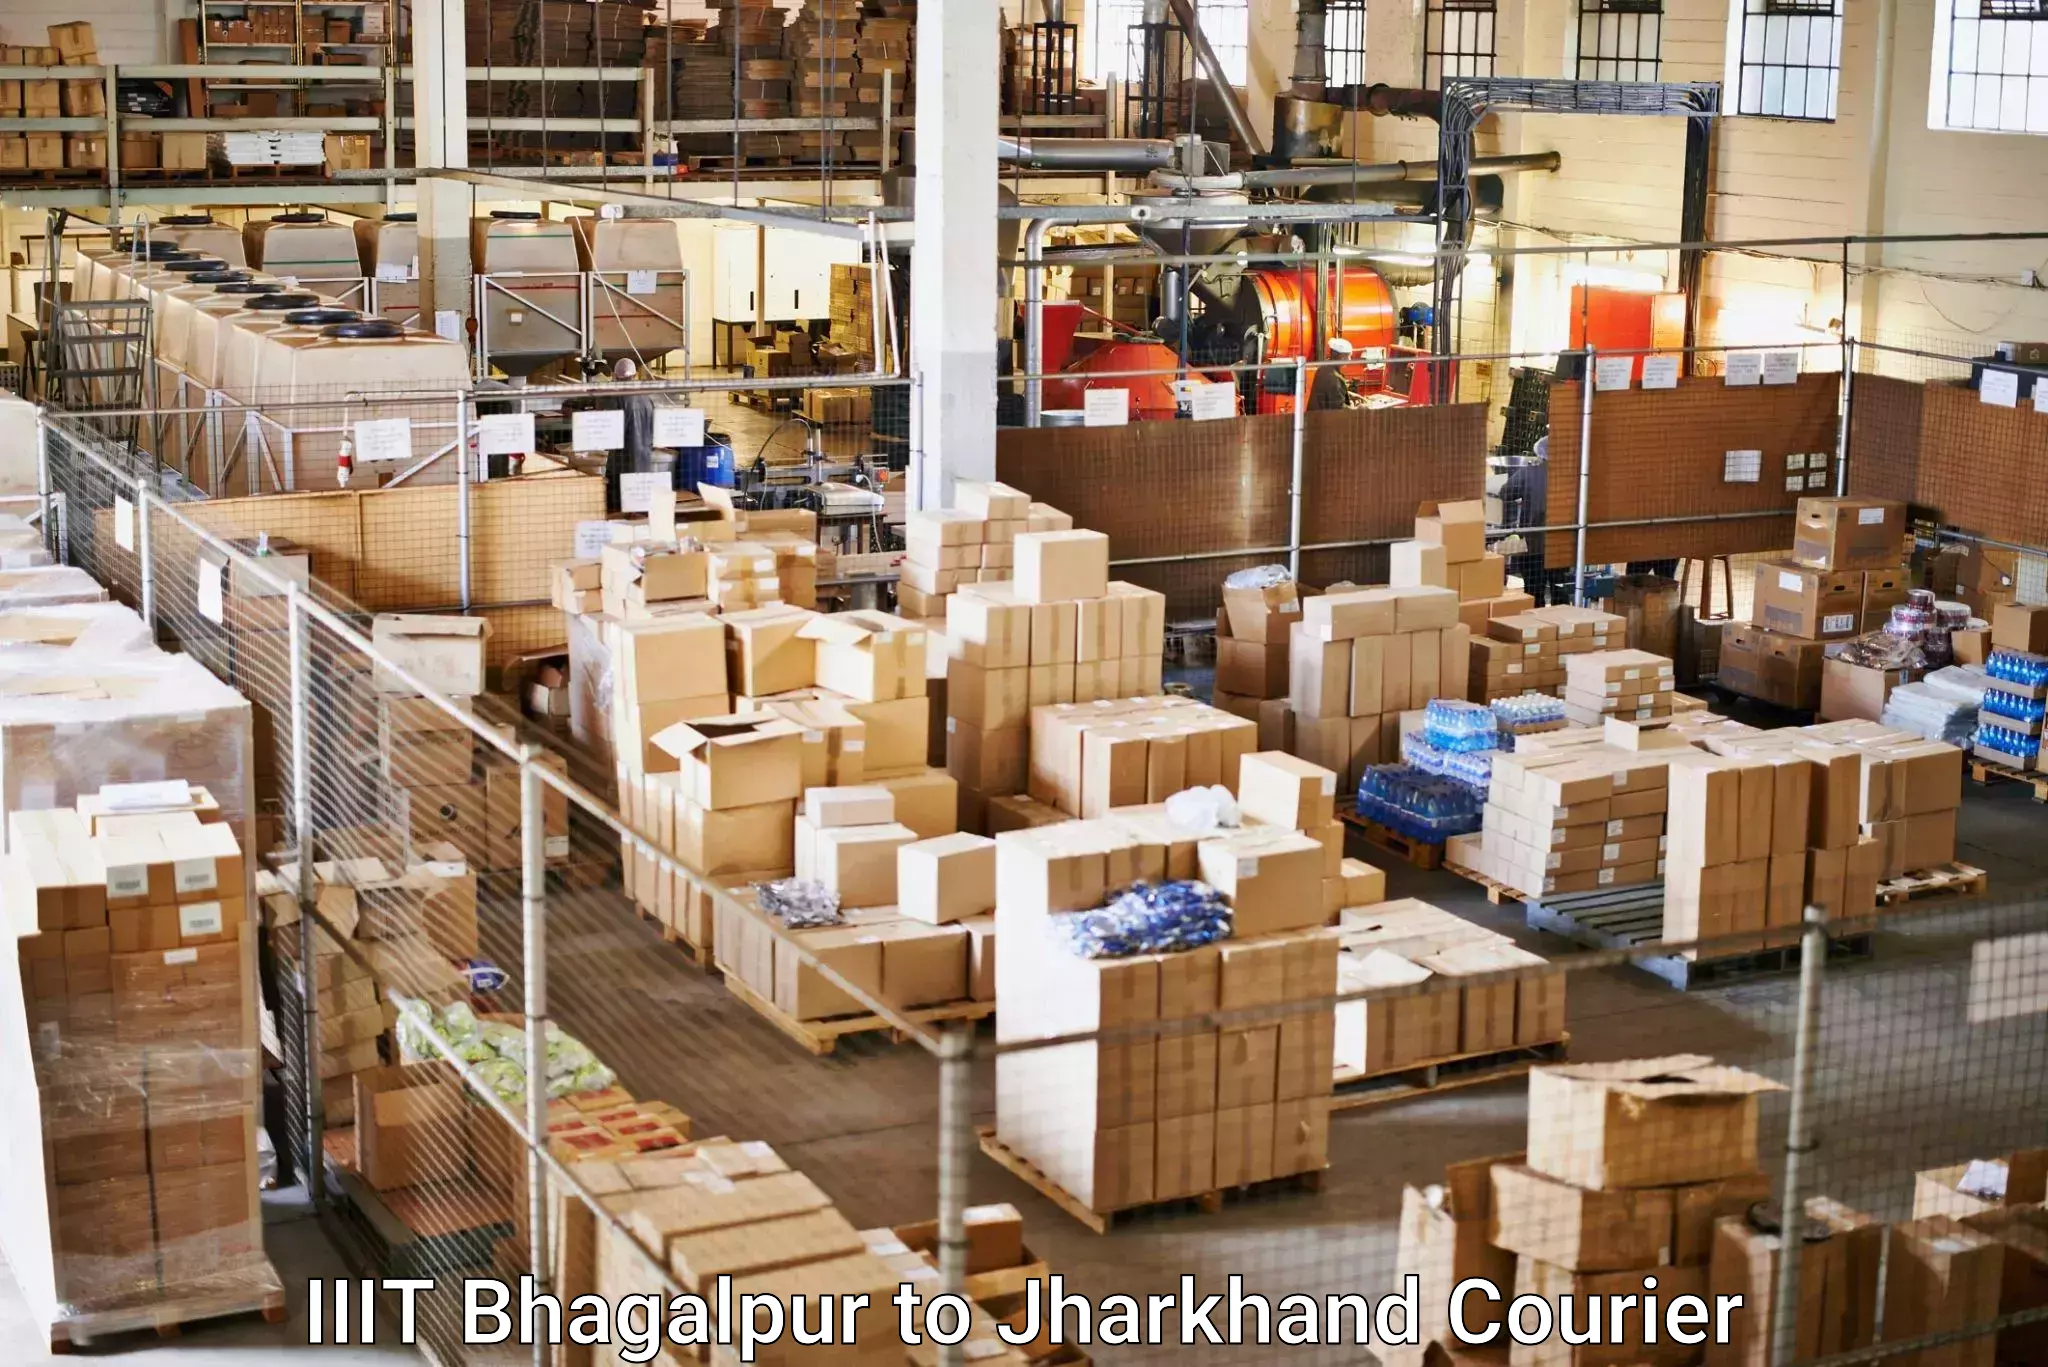 24/7 courier service IIIT Bhagalpur to IIT Dhanbad